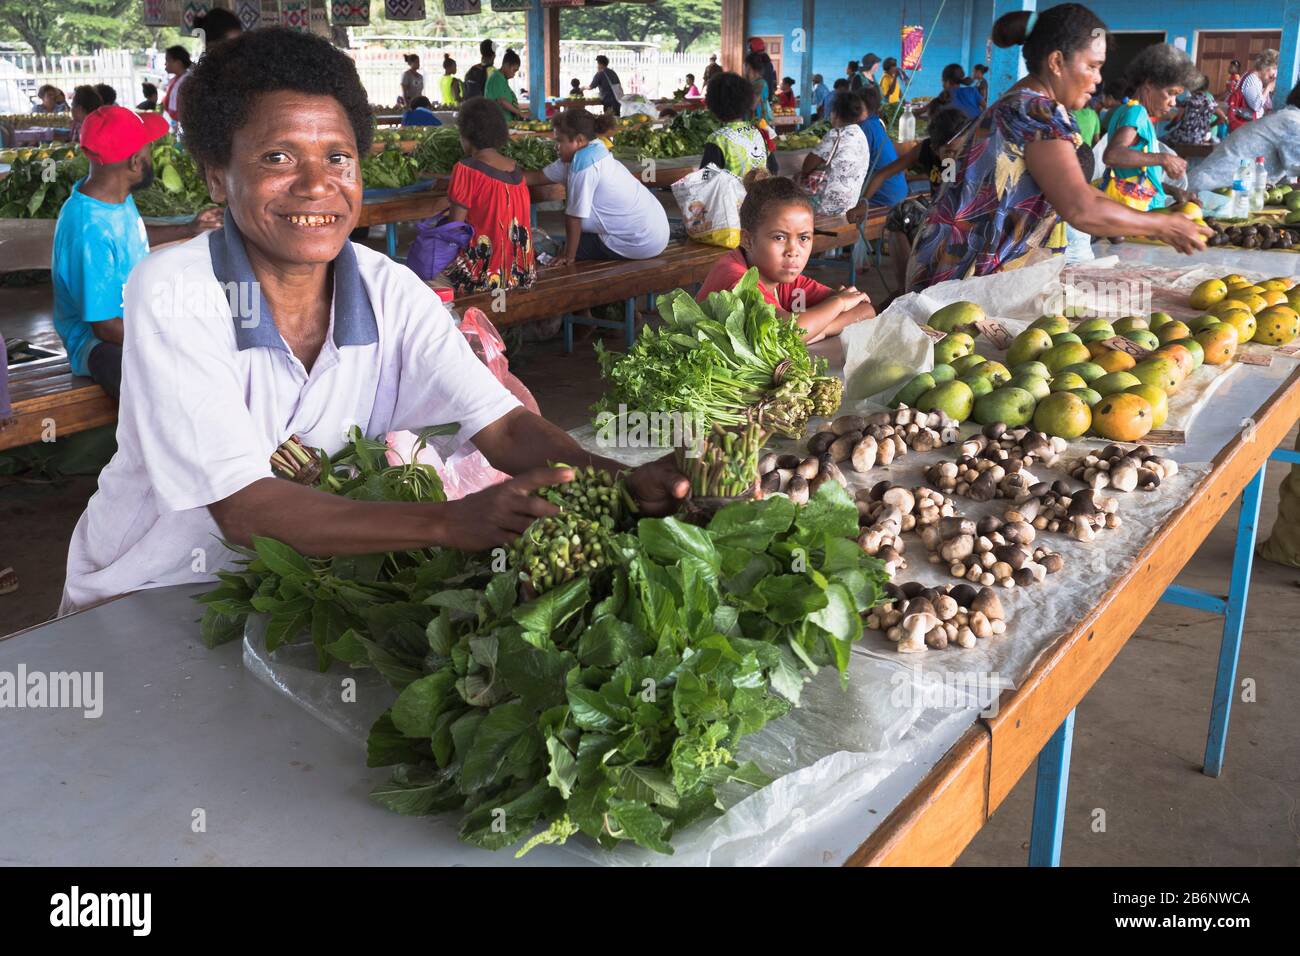 dh PNG Market vendor légumes ALOTAU PAPOUASIE-NOUVELLE-GUINÉE femme originaire souriante à fruit potager stall gens locaux personne nourriture rural asie Banque D'Images